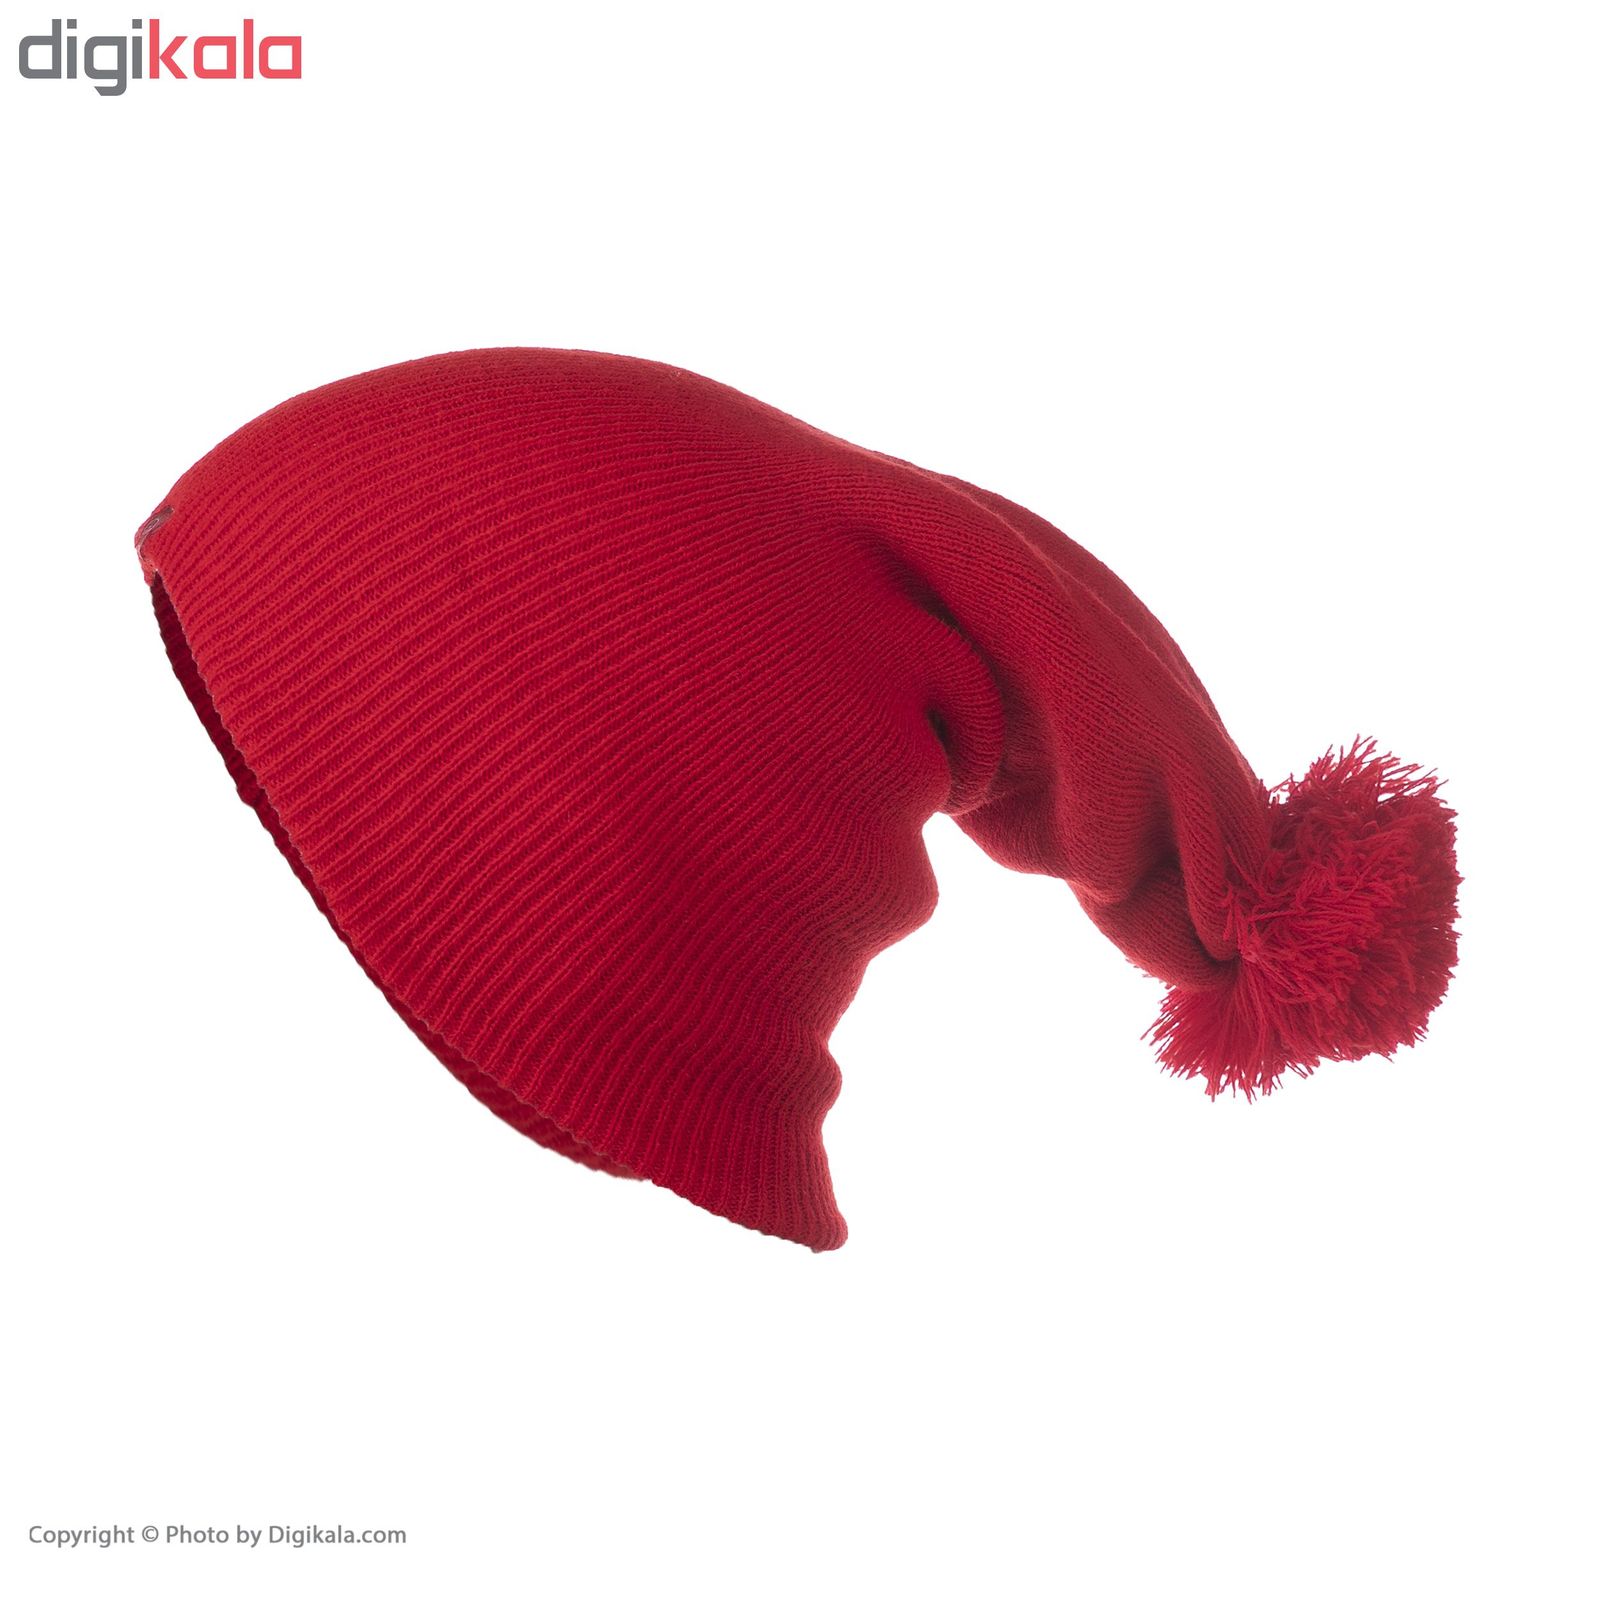 کلاه تچر مدل 2013116 - قرمز - 3